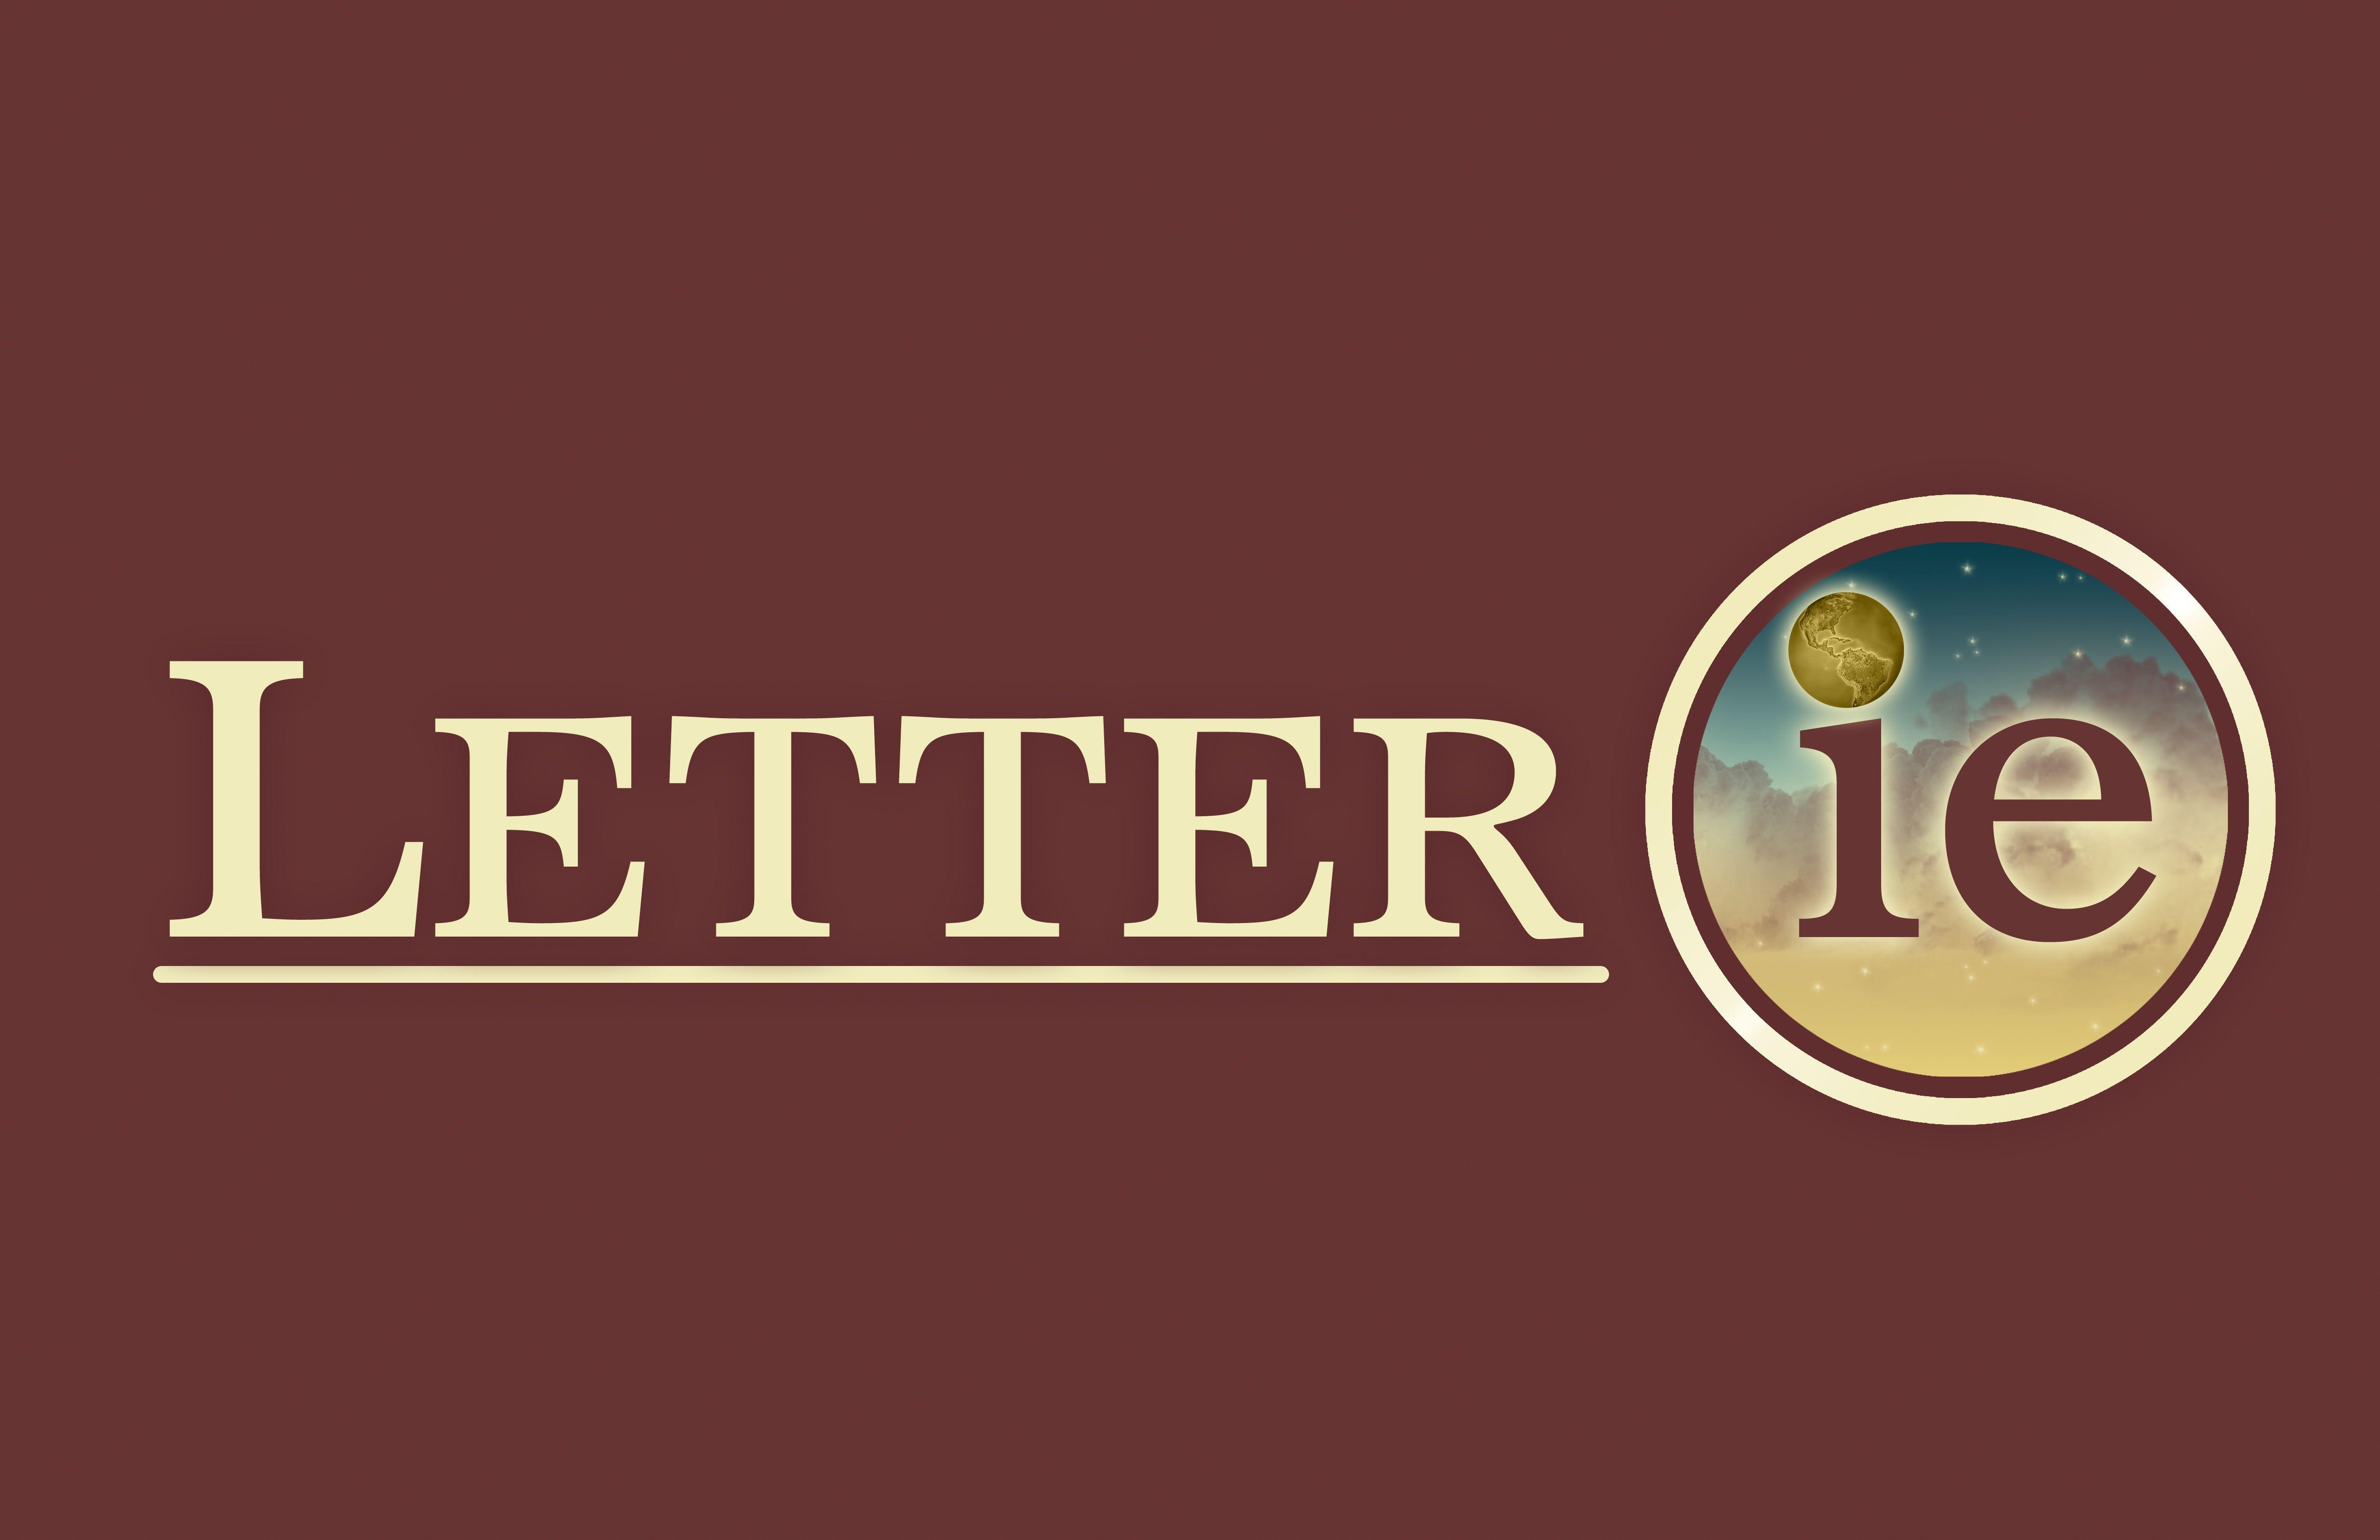 Old Letter Logo - Letter ie